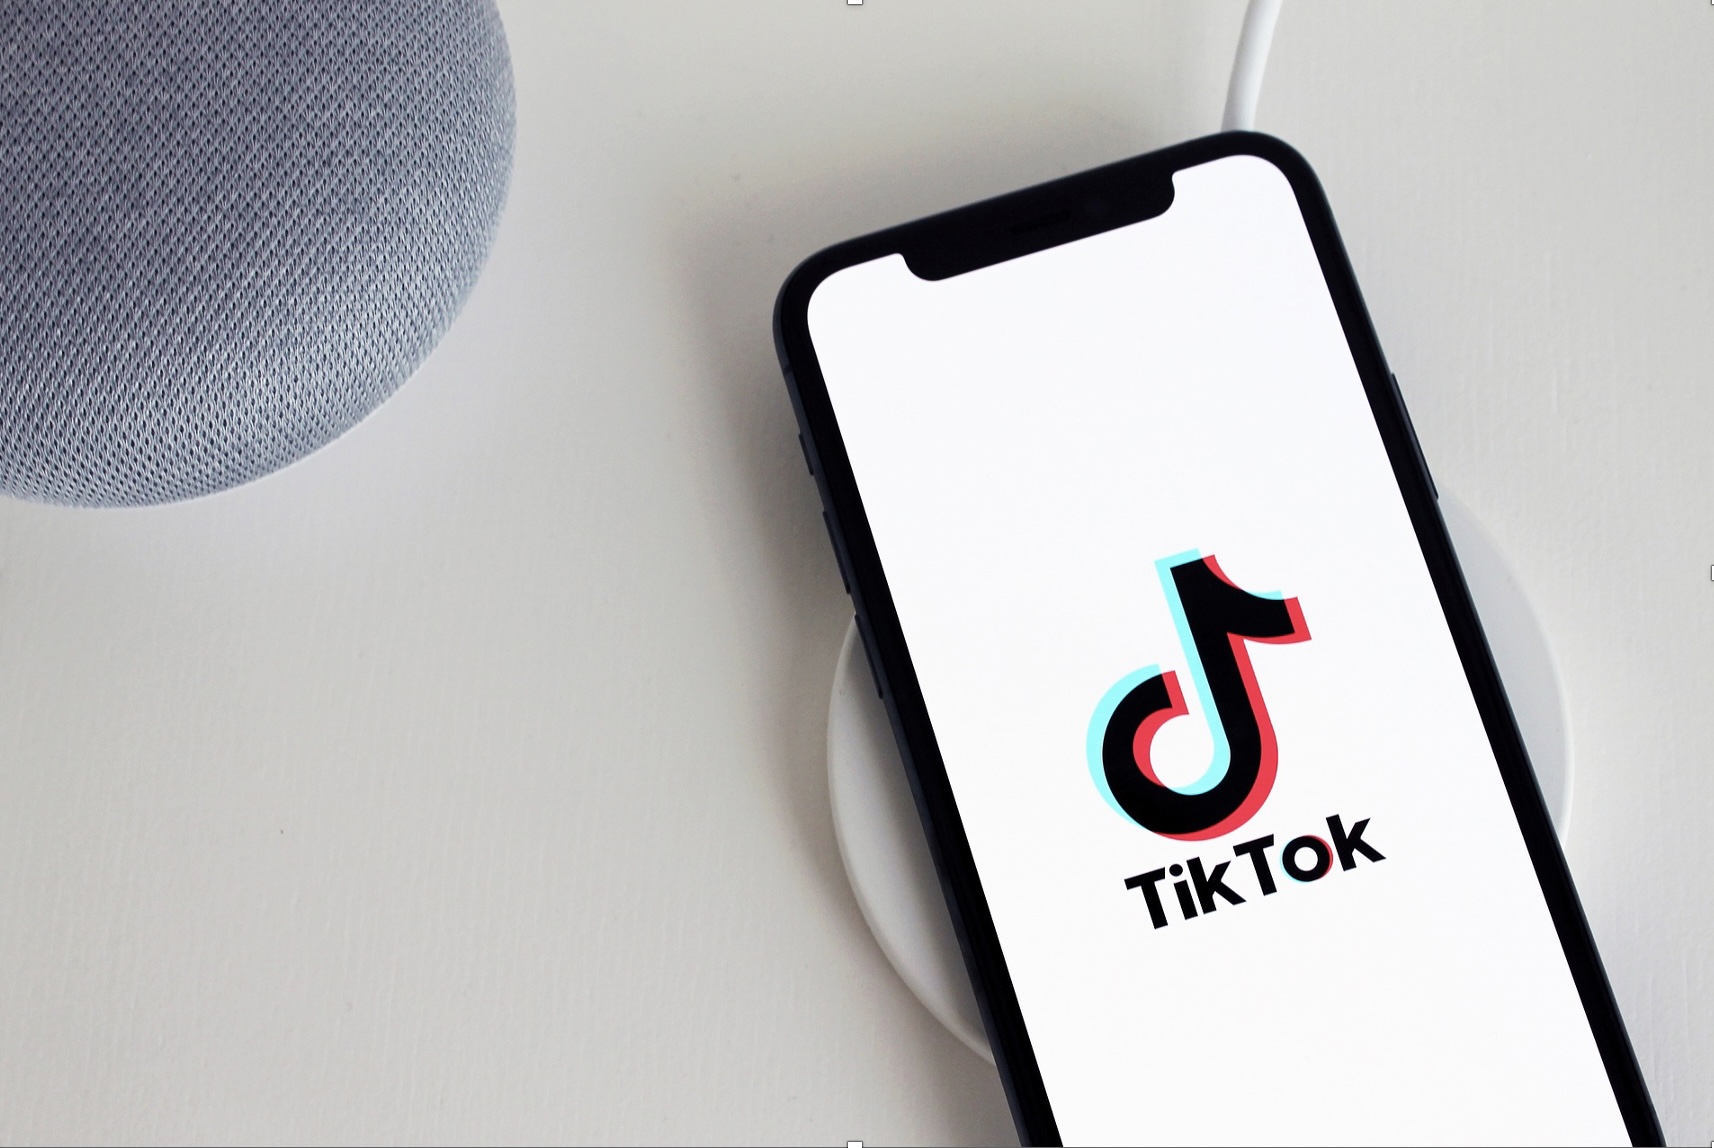 Baixar vídeos do TikTok de forma fácil, rápida e grátis 8